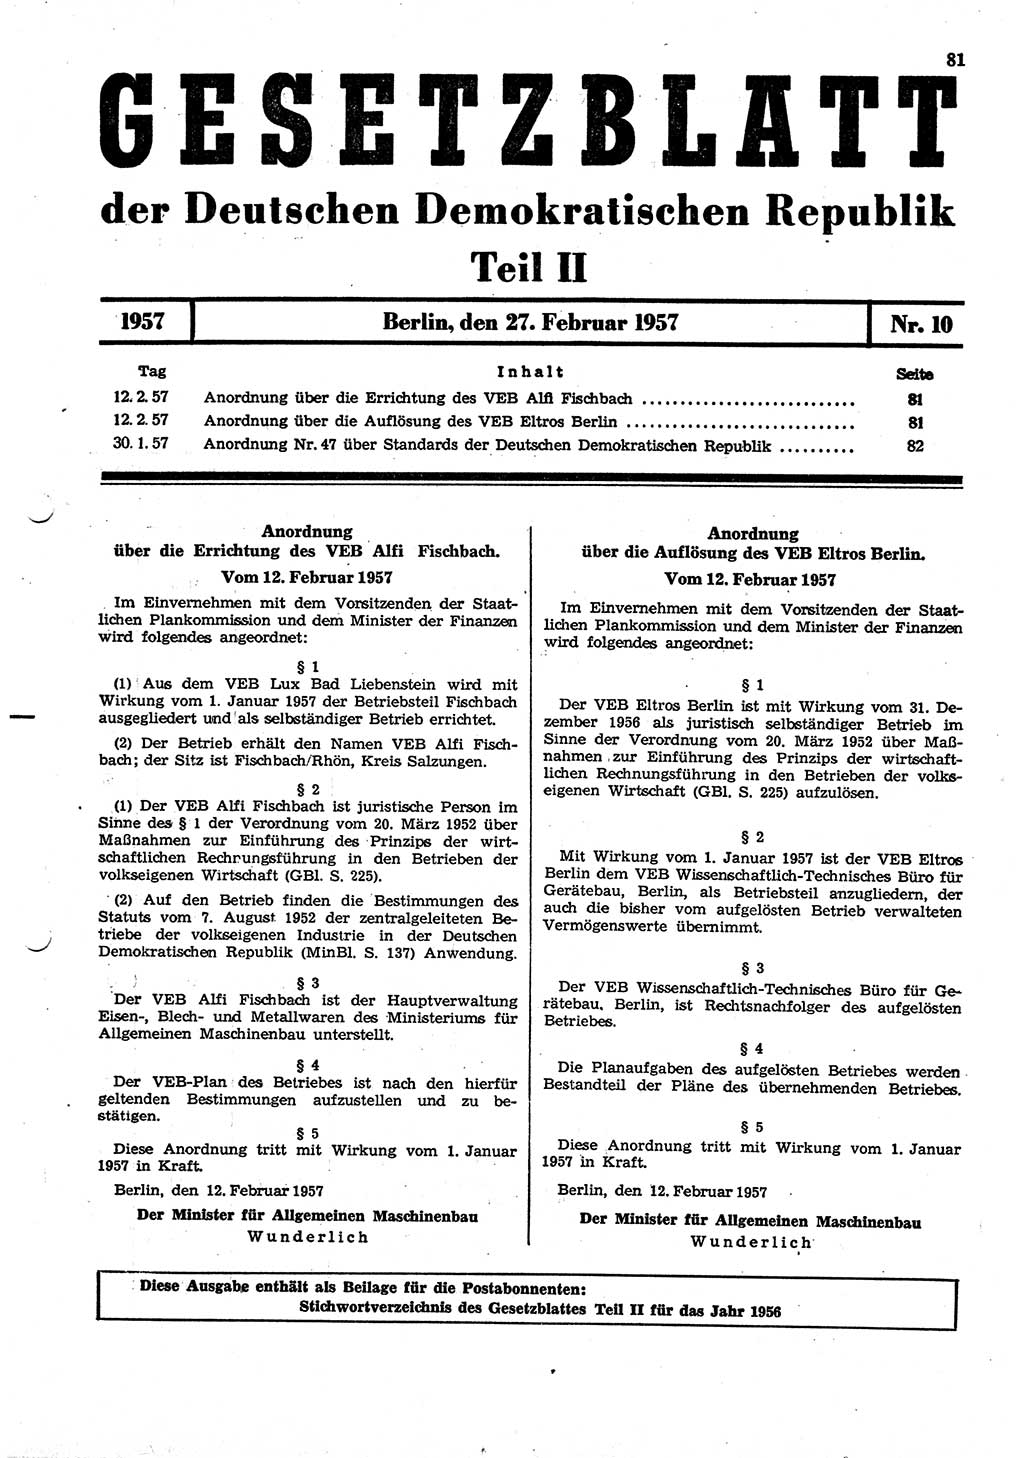 Gesetzblatt (GBl.) der Deutschen Demokratischen Republik (DDR) Teil ⅠⅠ 1957, Seite 81 (GBl. DDR ⅠⅠ 1957, S. 81)